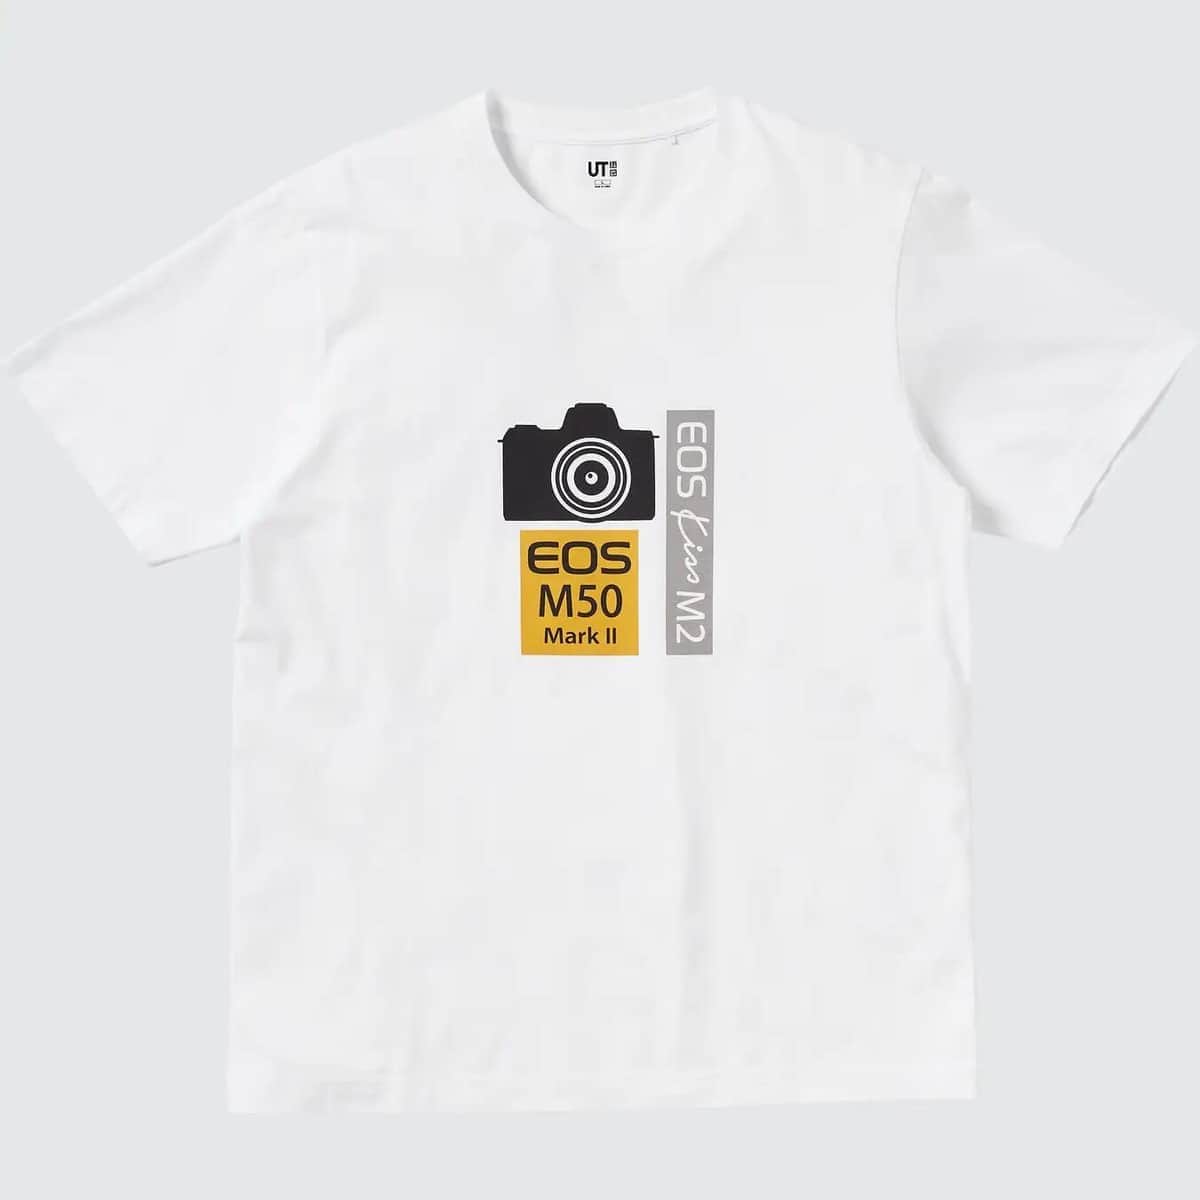 「EOS Kiss M2」とユニクロ「UT」　Tシャツのコラボモデル